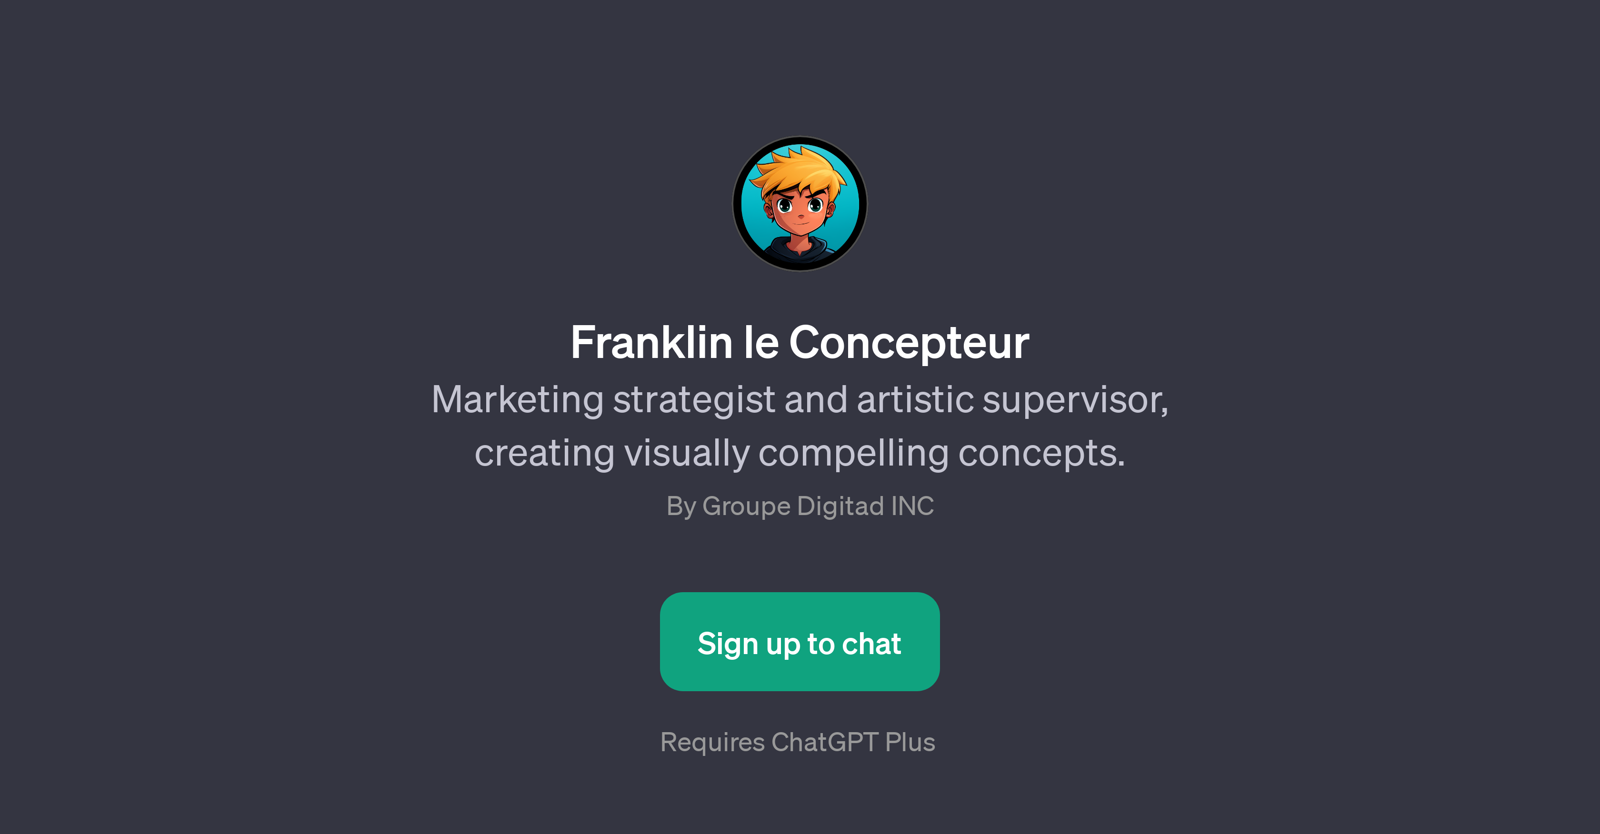 Franklin le Concepteur website